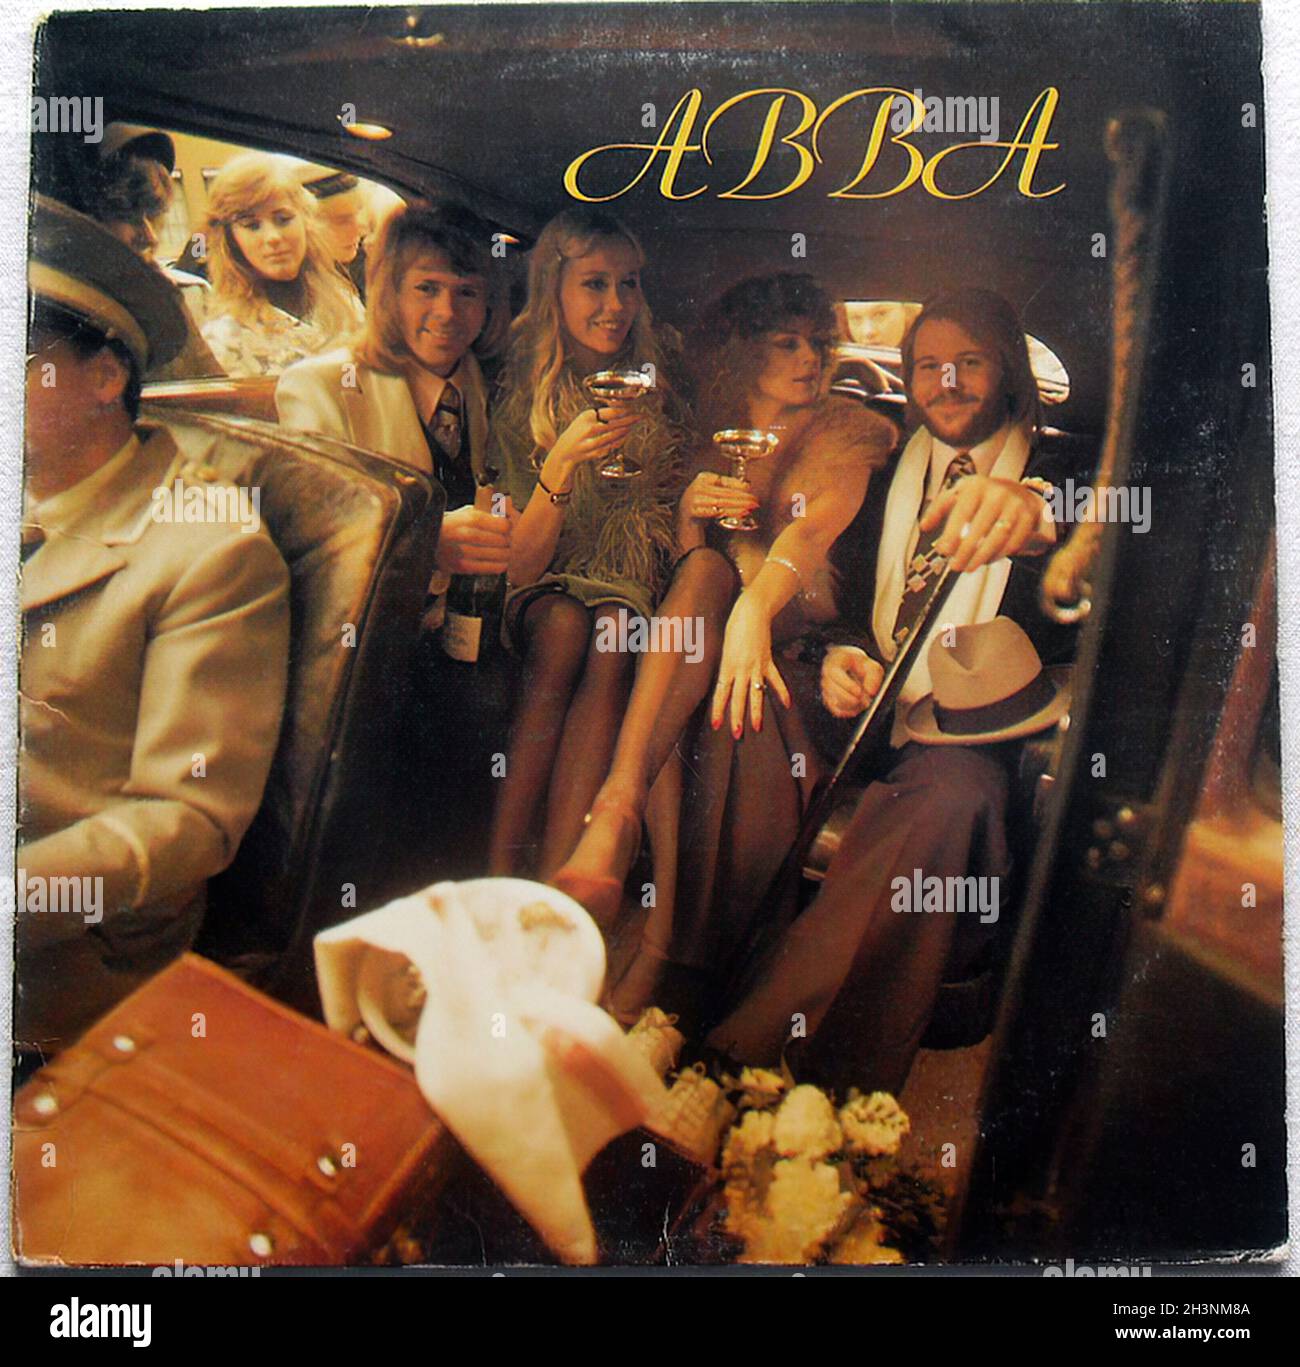 ABBA the album - Vintage vinyl album cover Stock Photo - Alamy